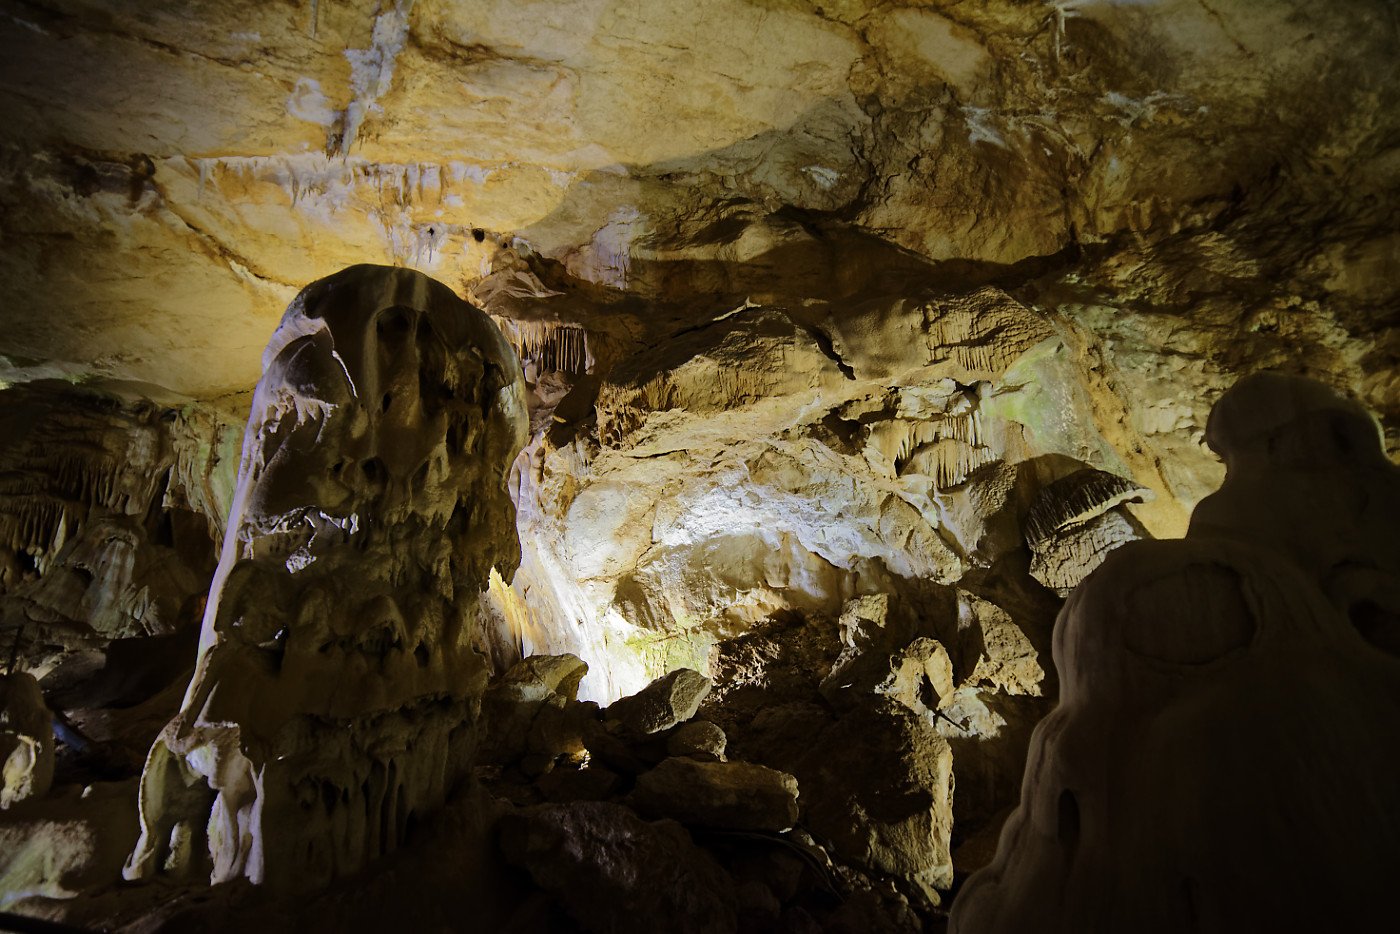 пещера, чатырдаг, фото, крым, спелео, Karasev Pavel